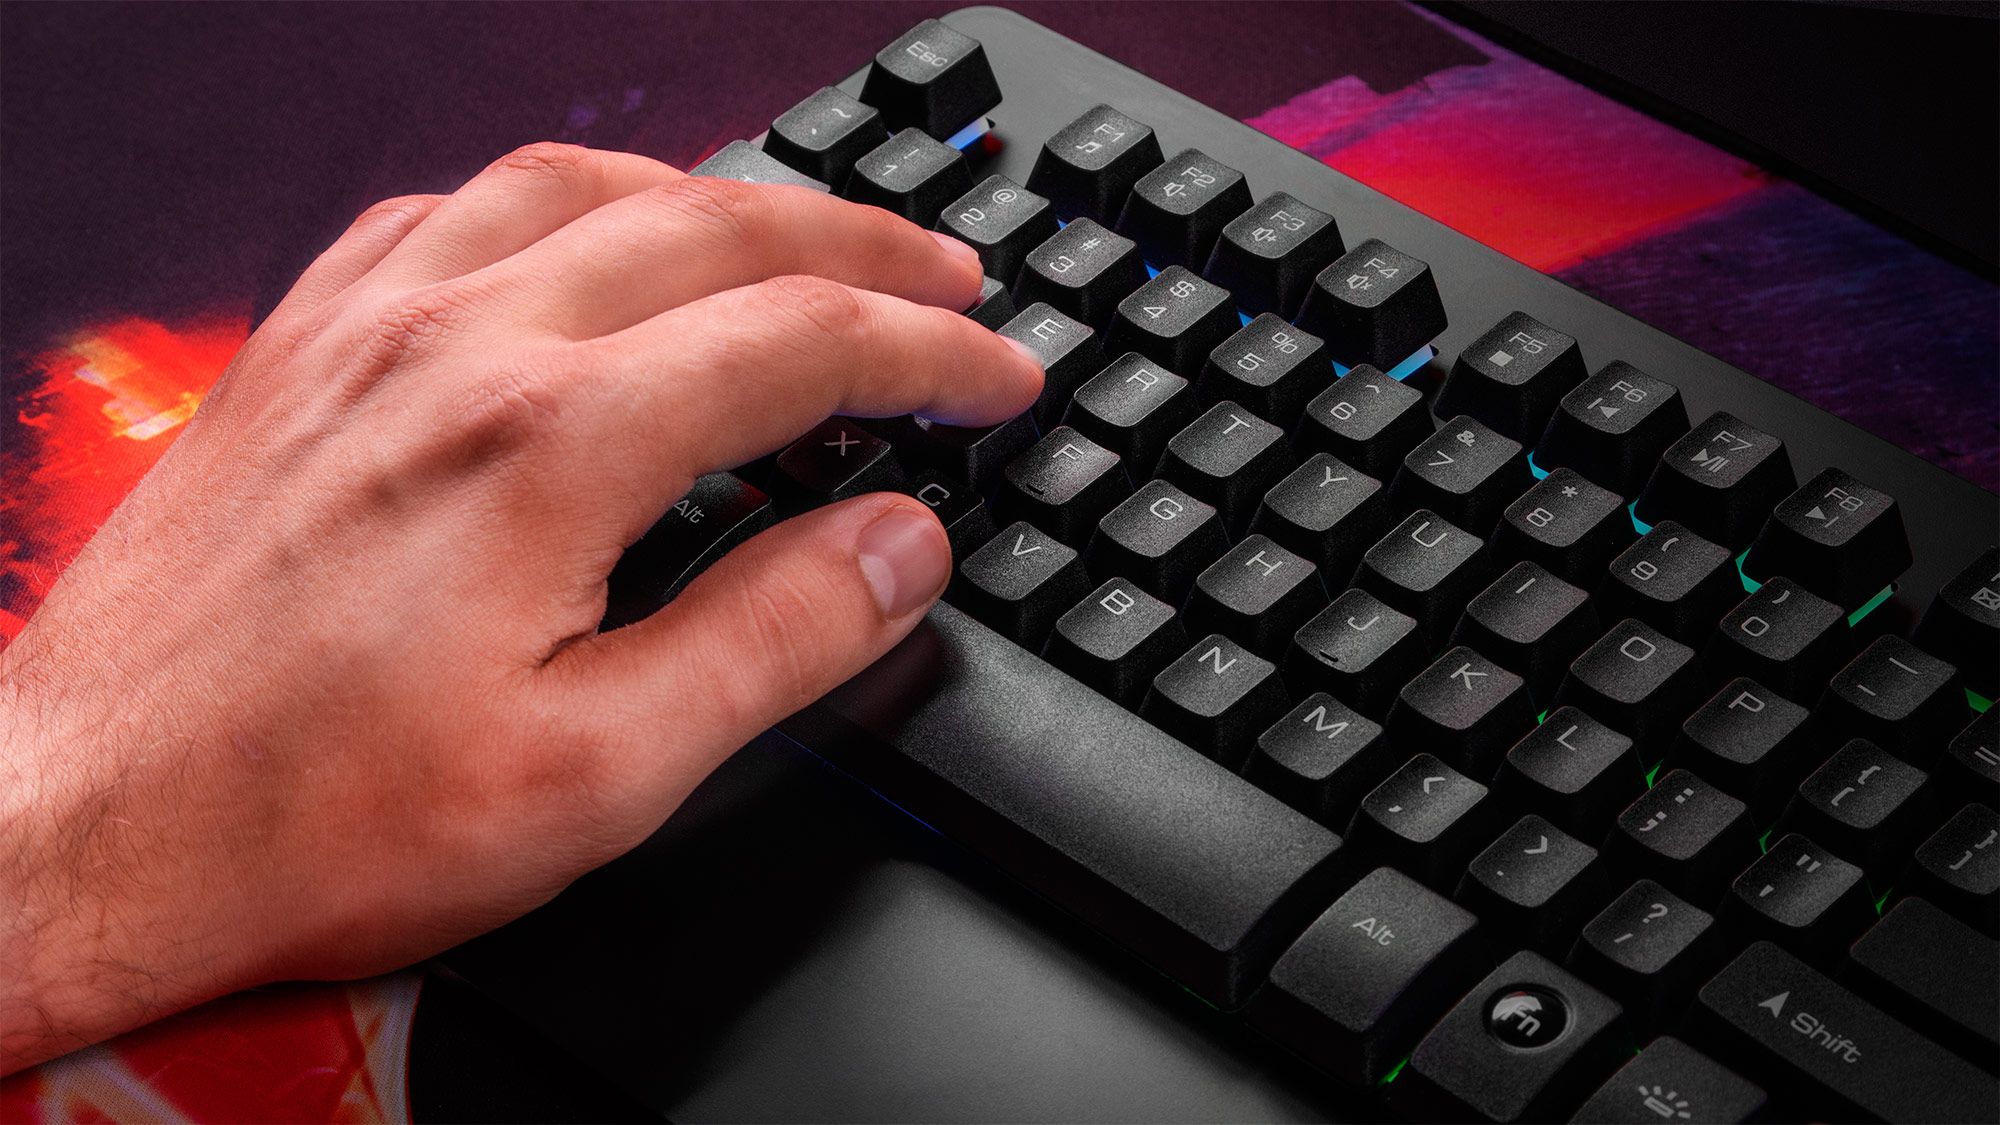 Nu lasa blocarea tastelor in combinatii sa iti intrerupa jocul! Tastatura GK-50 are incorporata tehnologie anti-ghosting, care creste numarul de taste detectate, oferind un confort ridicat in timpul jocului si un mai bun control pe toata durata sa. 